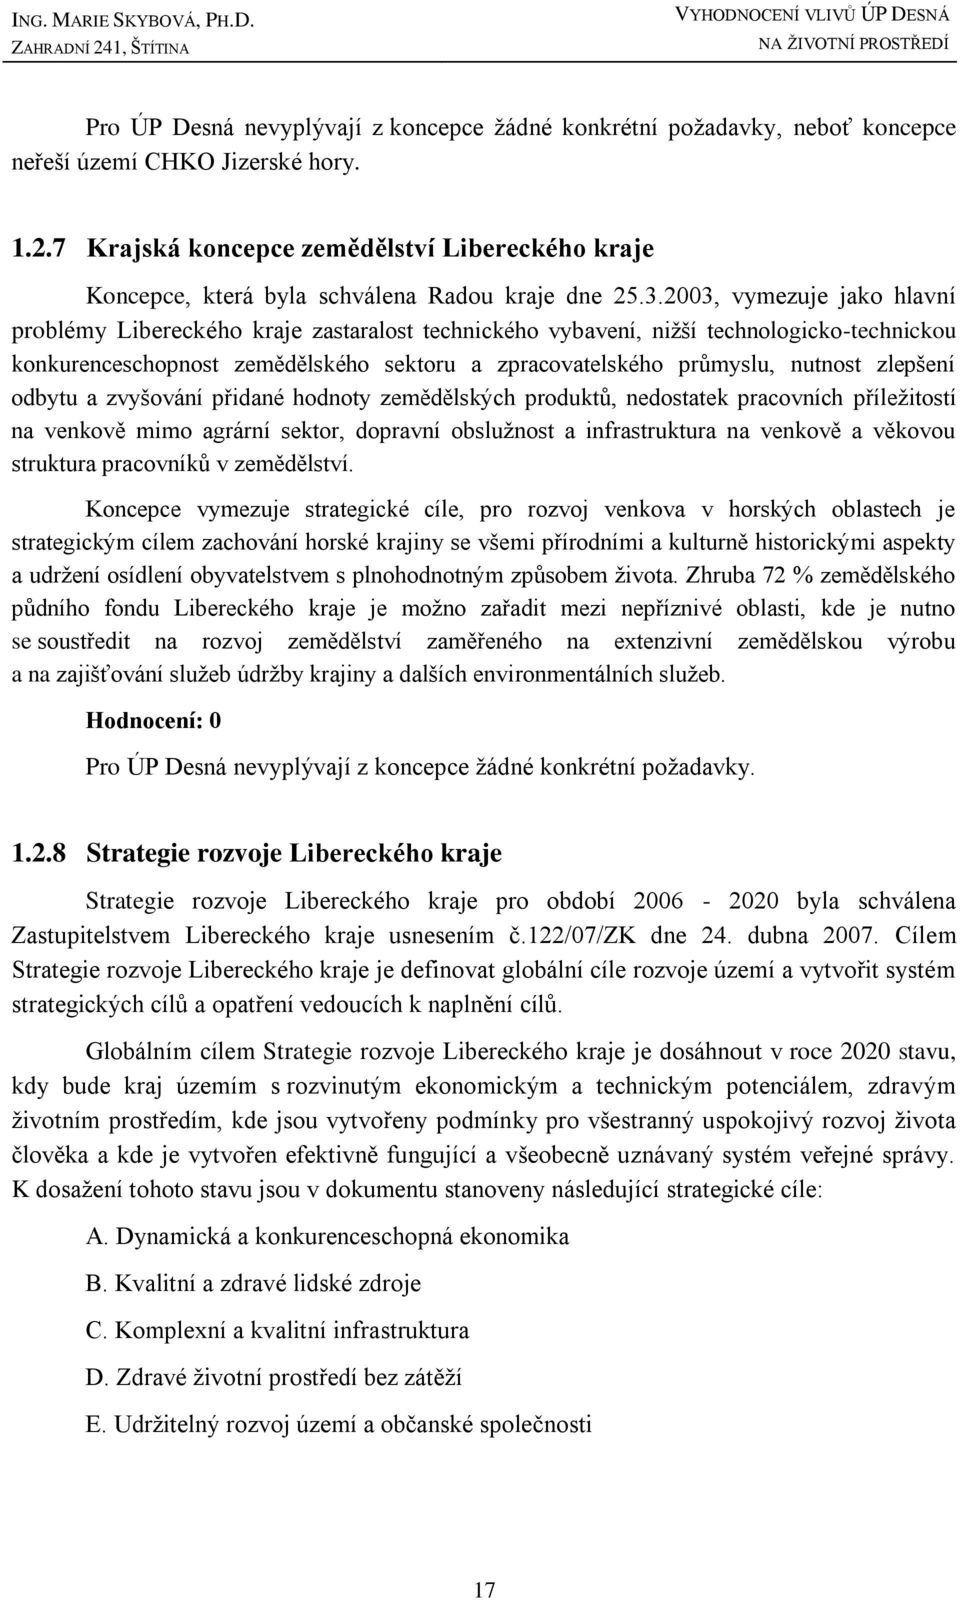 2003, vymezuje jako hlavní problémy Libereckého kraje zastaralost technického vybavení, niţší technologicko-technickou konkurenceschopnost zemědělského sektoru a zpracovatelského průmyslu, nutnost